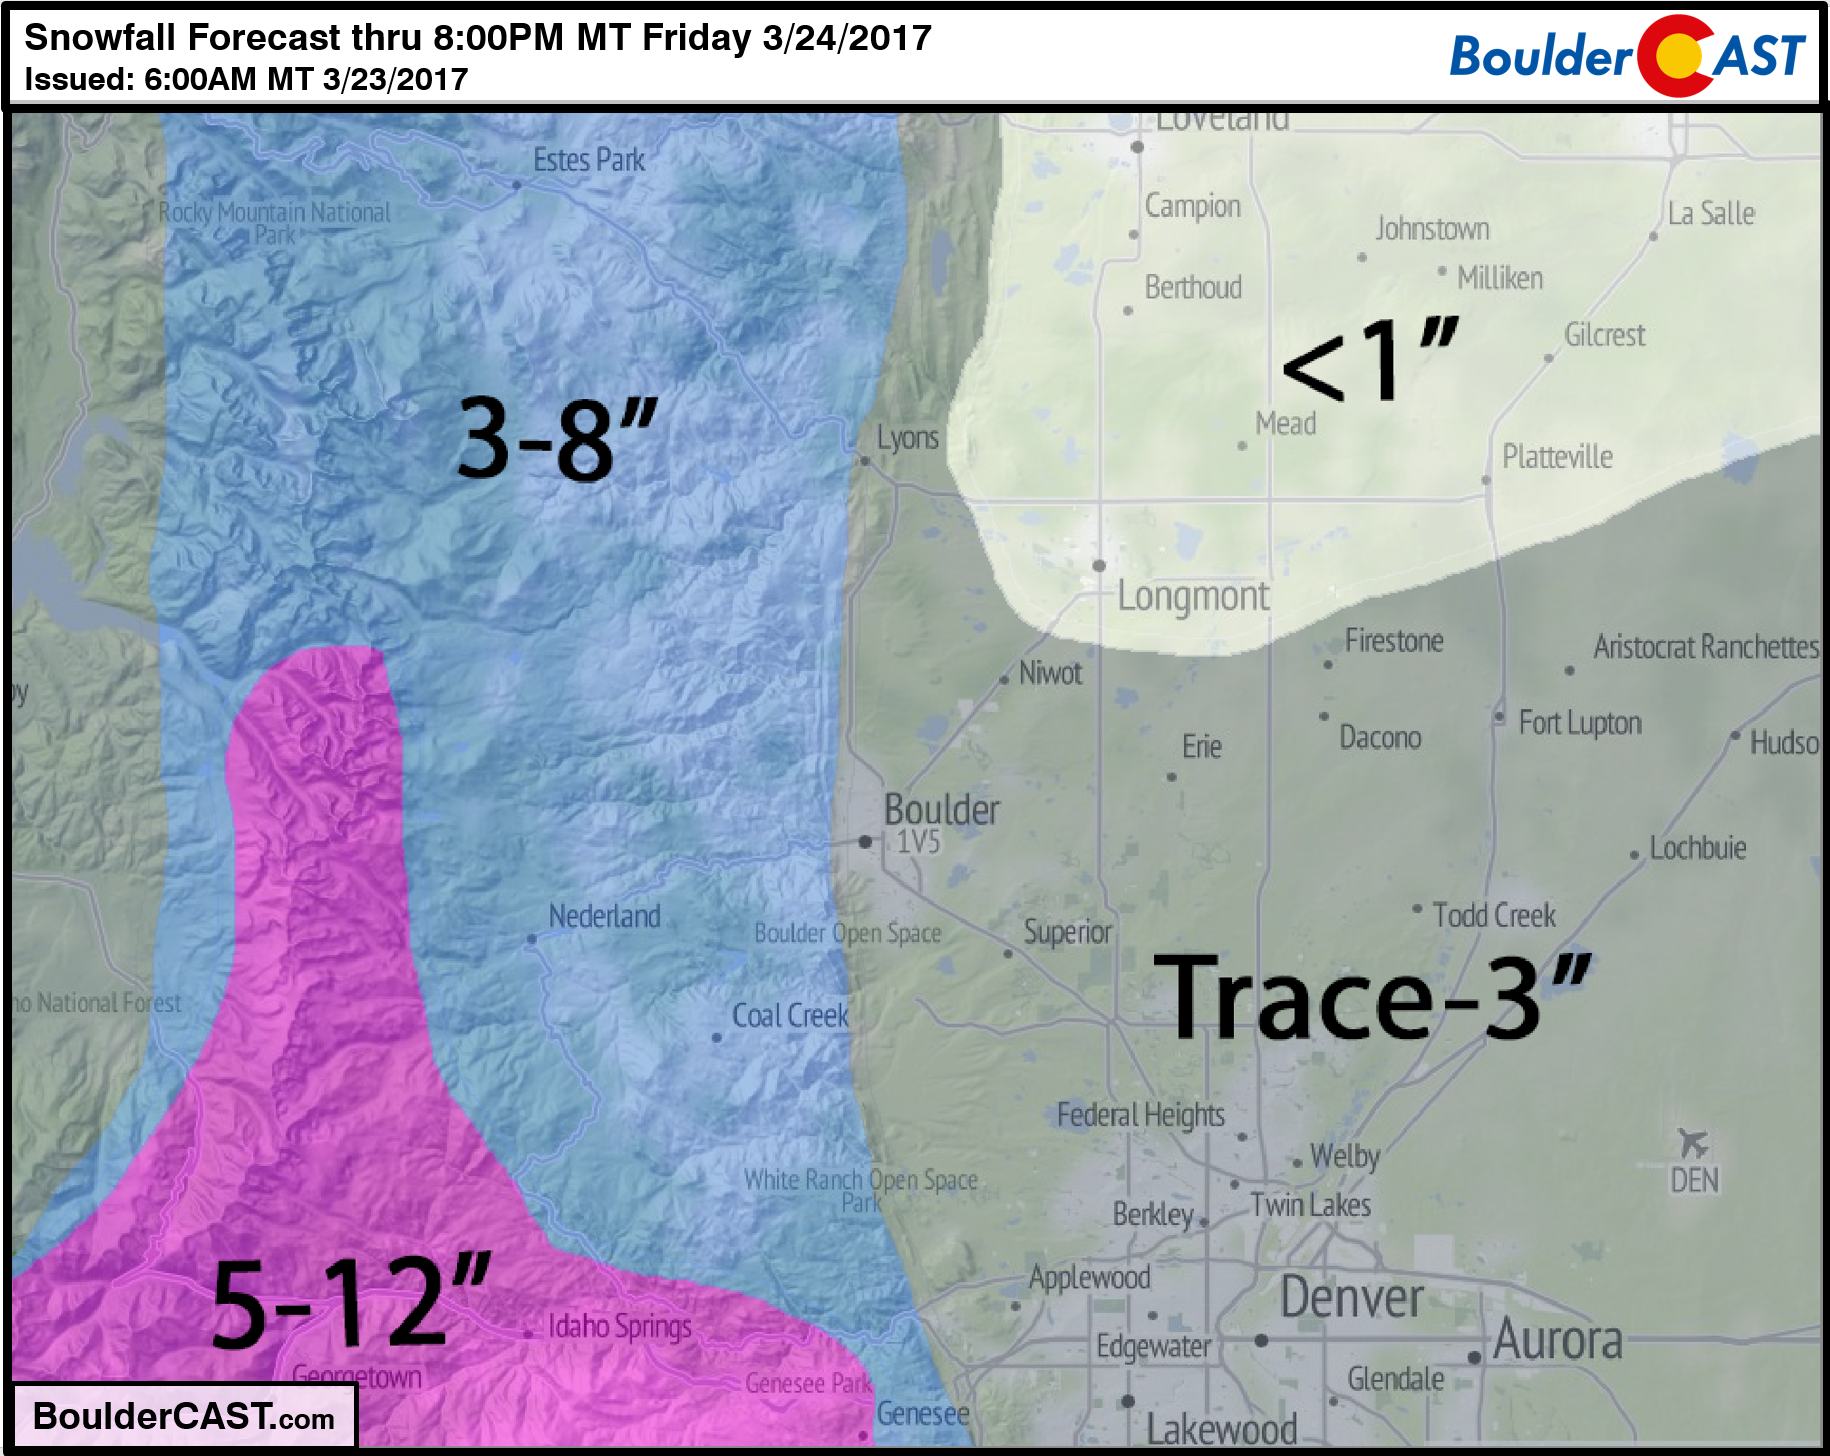 Snowfall_Forecast_March-23-24-2017_Denver_Colorado_BoulderCAST